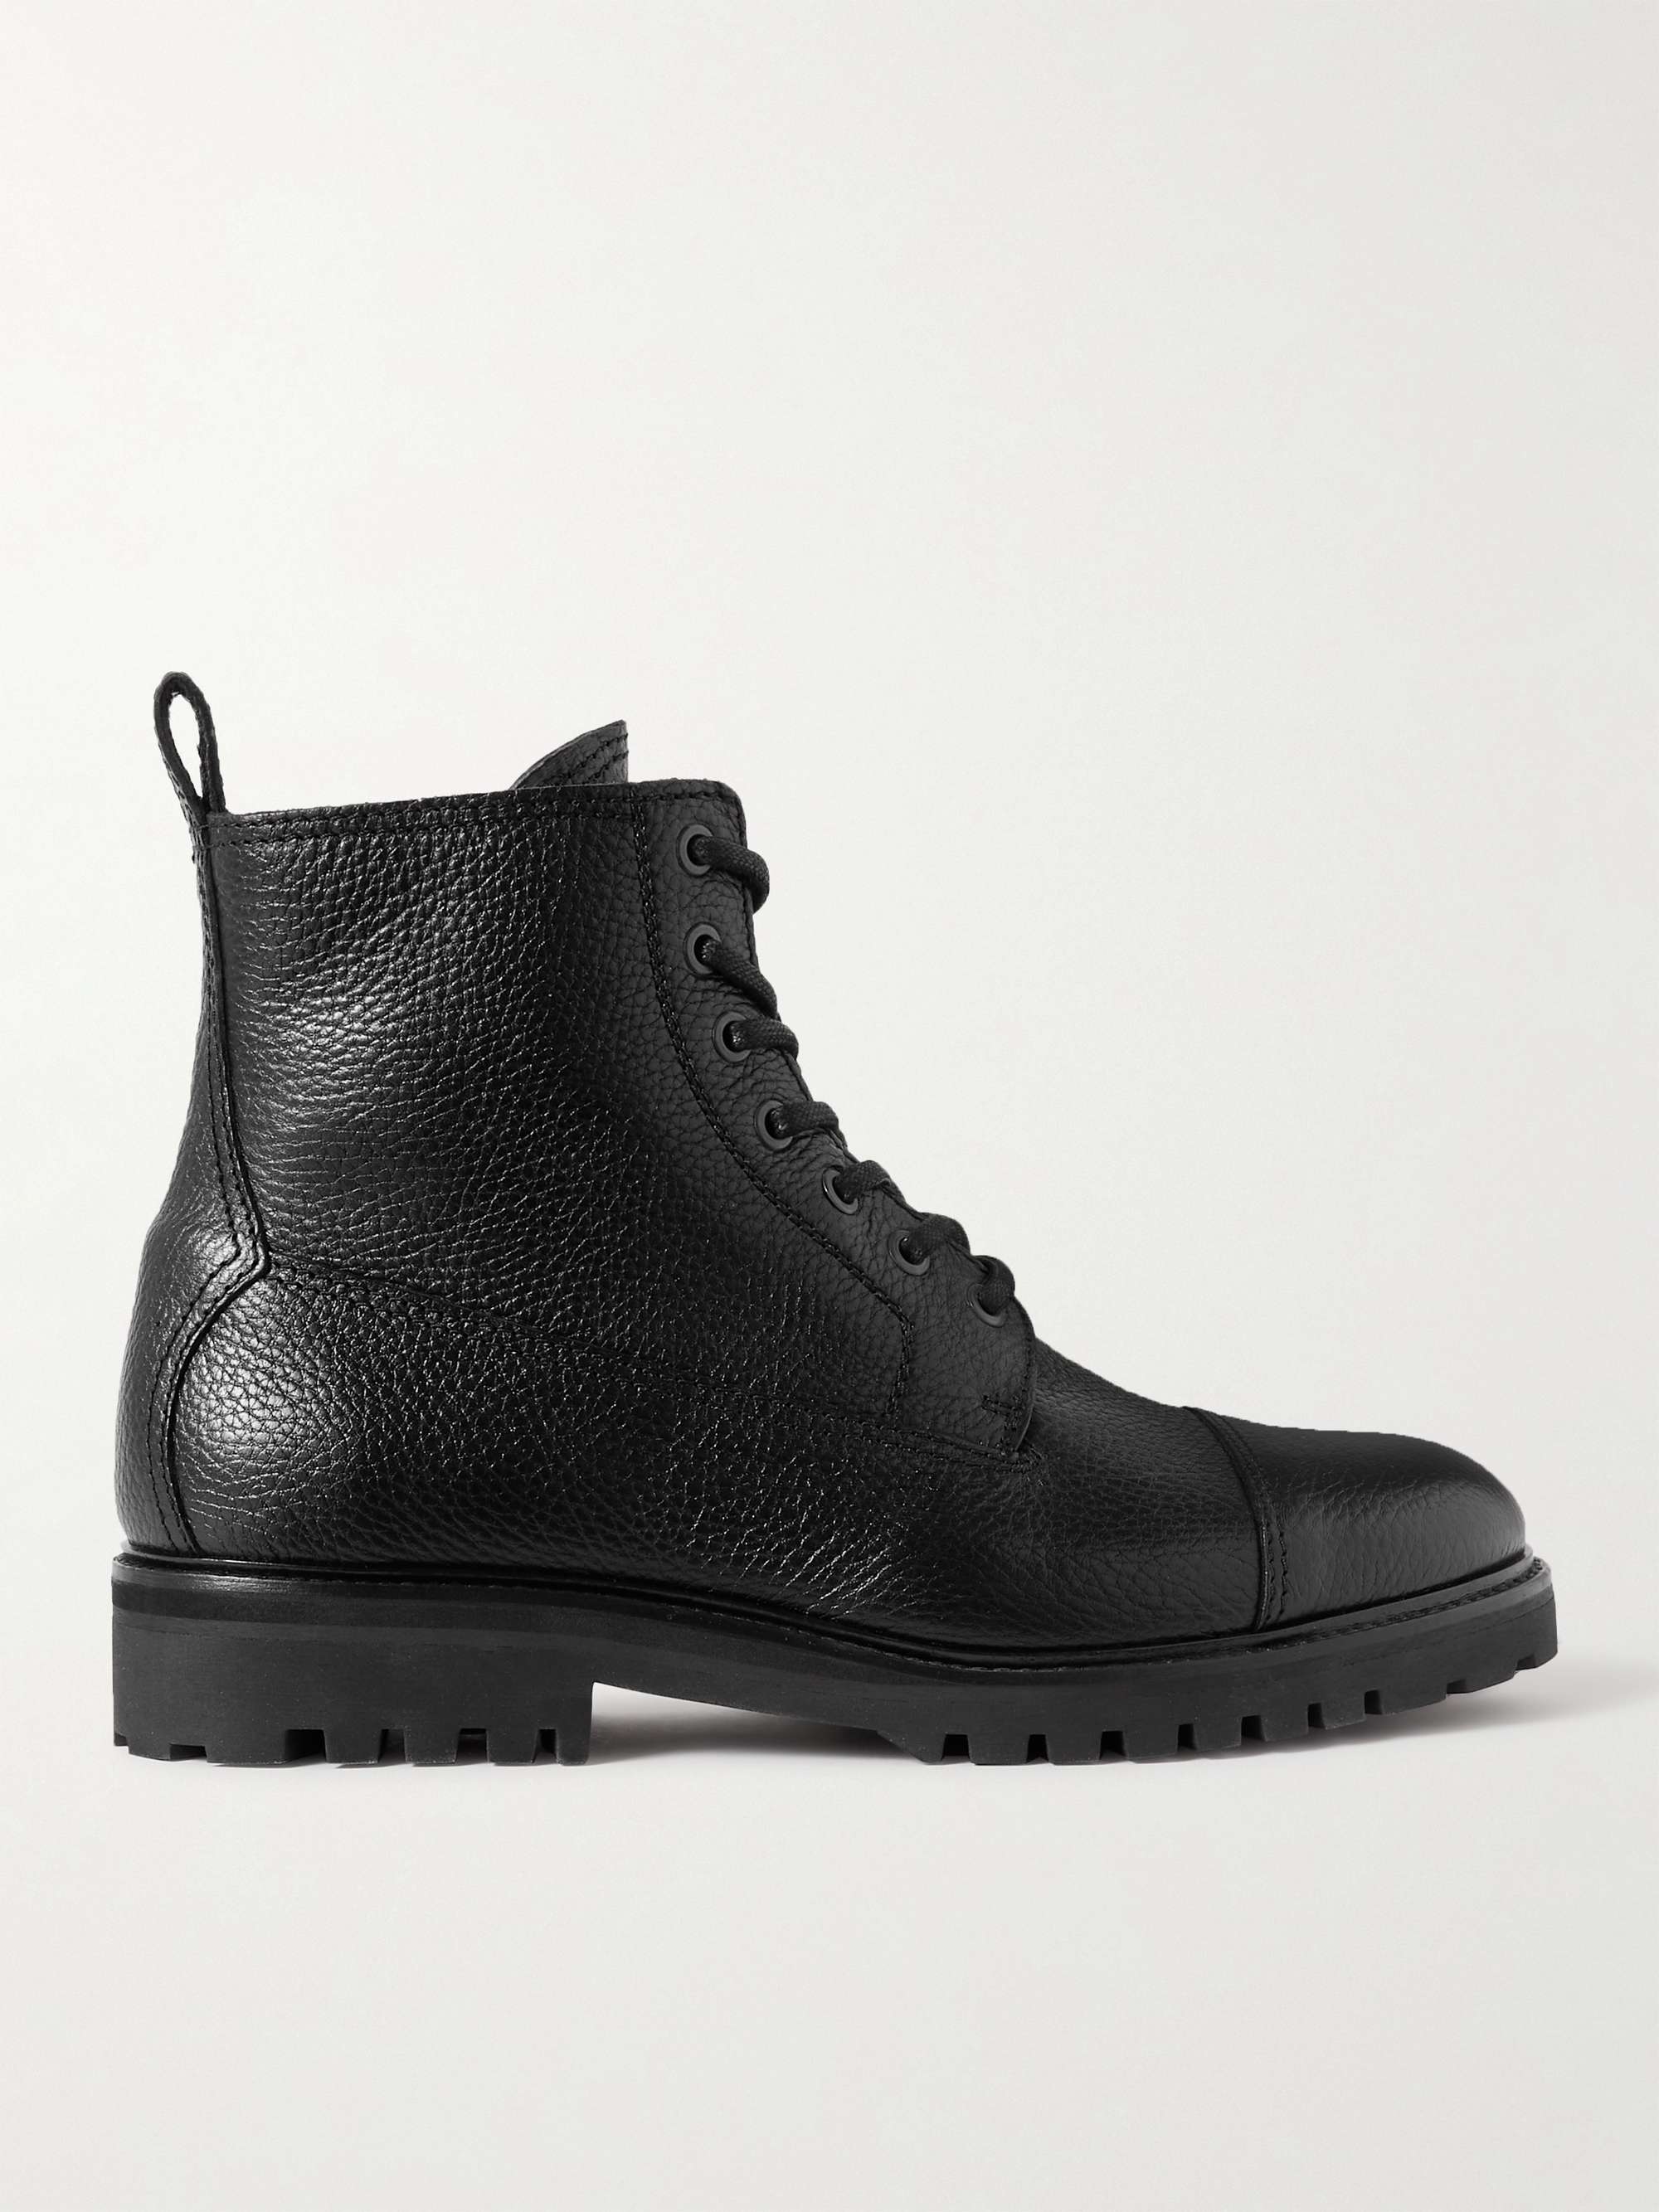 BELSTAFF Alperton Full-Grain Leather Boots for Men | MR PORTER